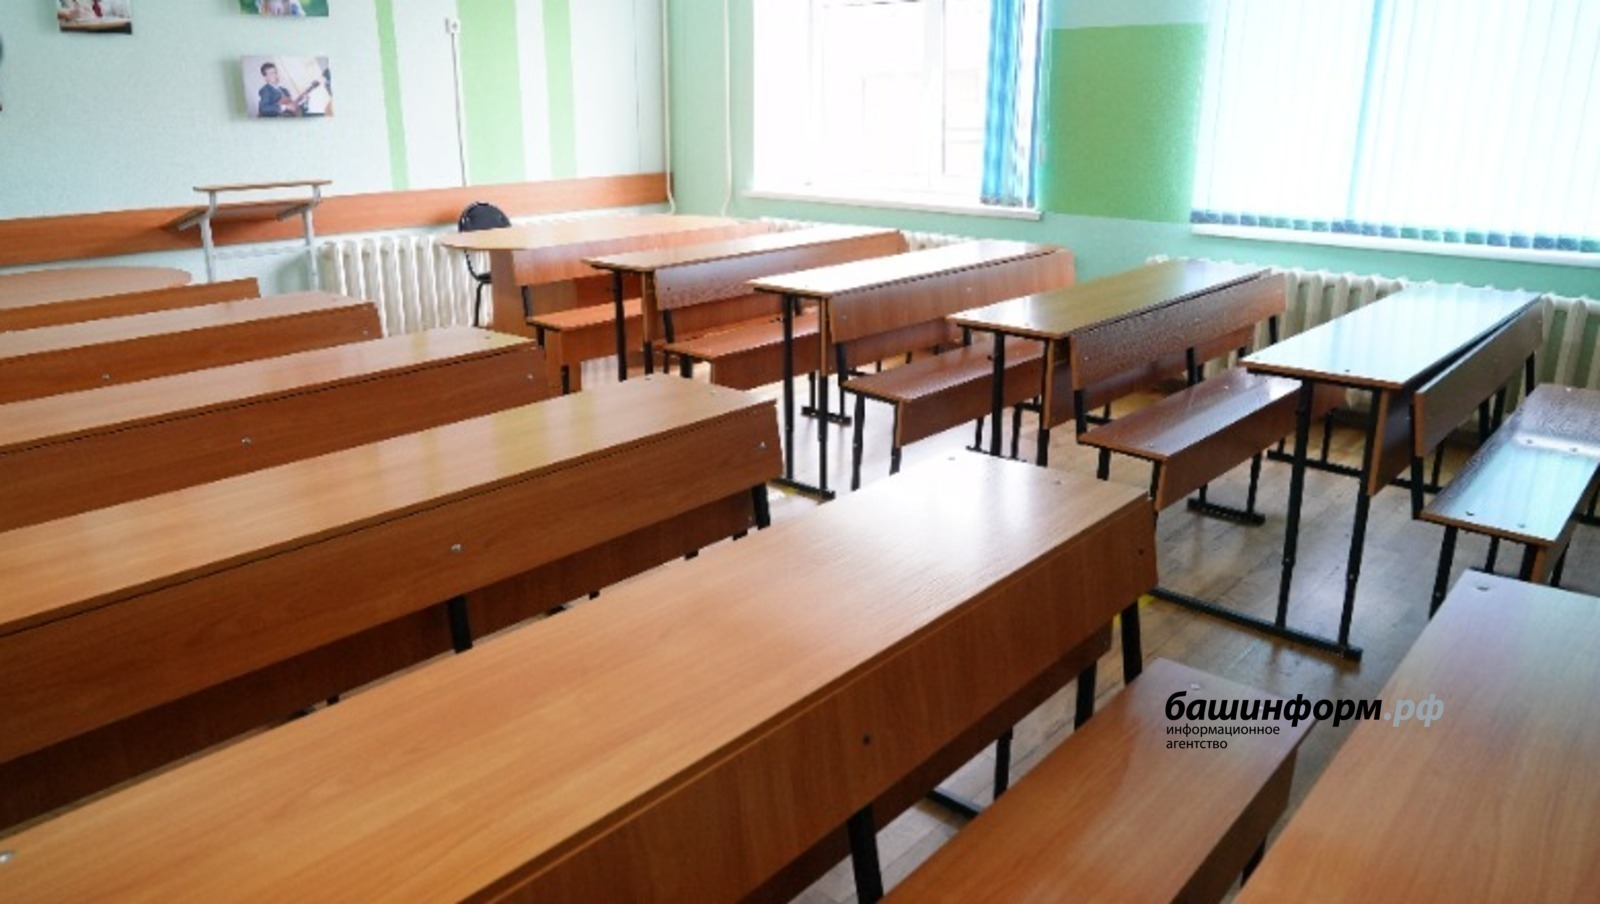 В ряде школ Башкирии действует карантин по гриппу и ОРВИ